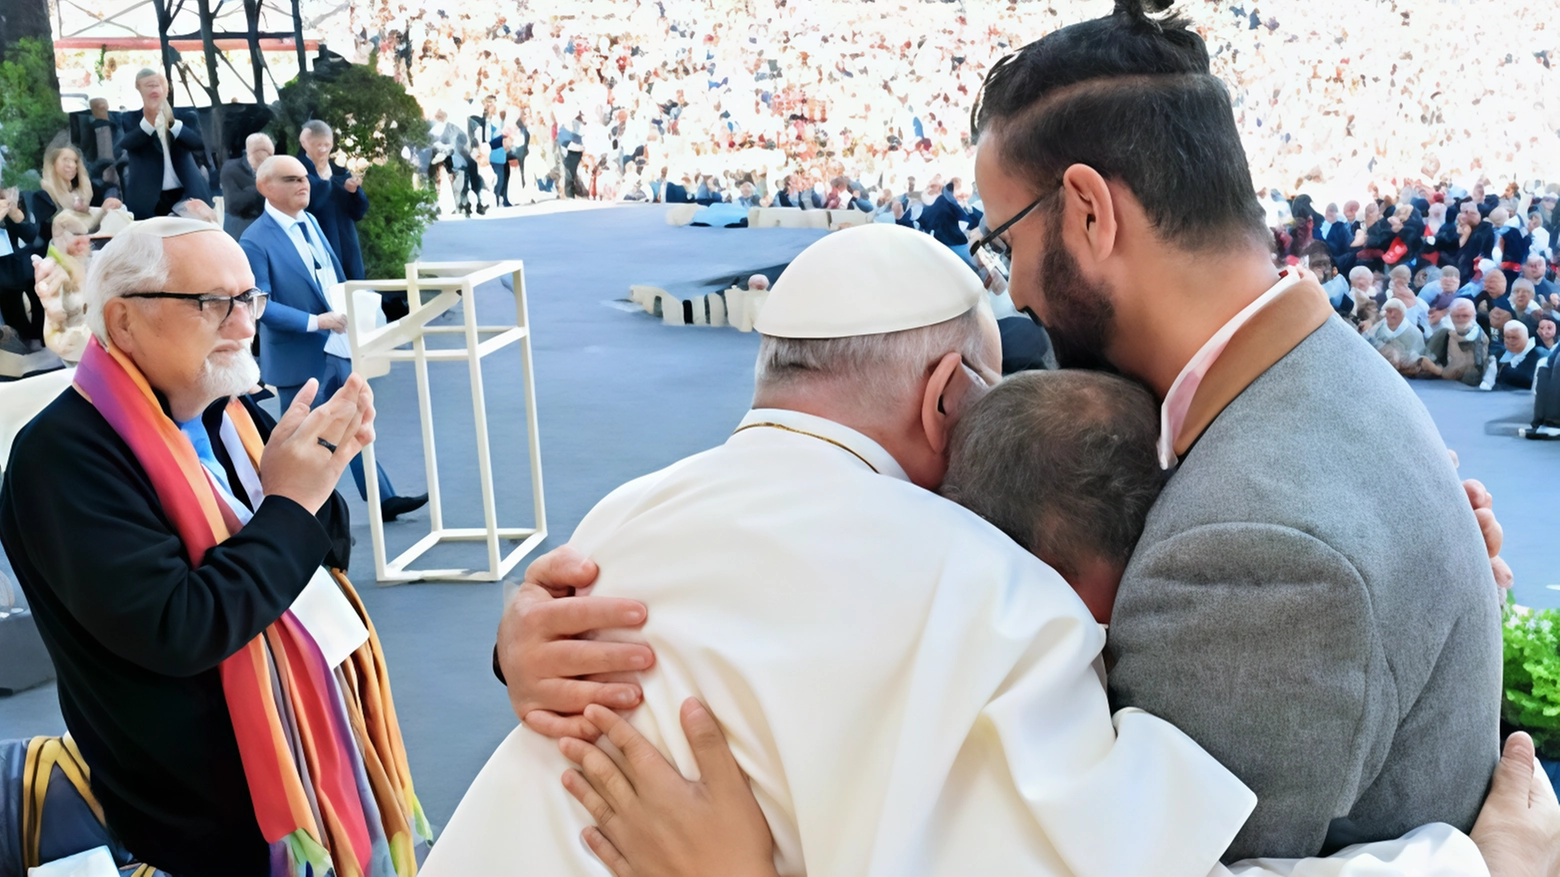 Un incontro speciale. L’abbraccio del Papa a Israele e Palestina